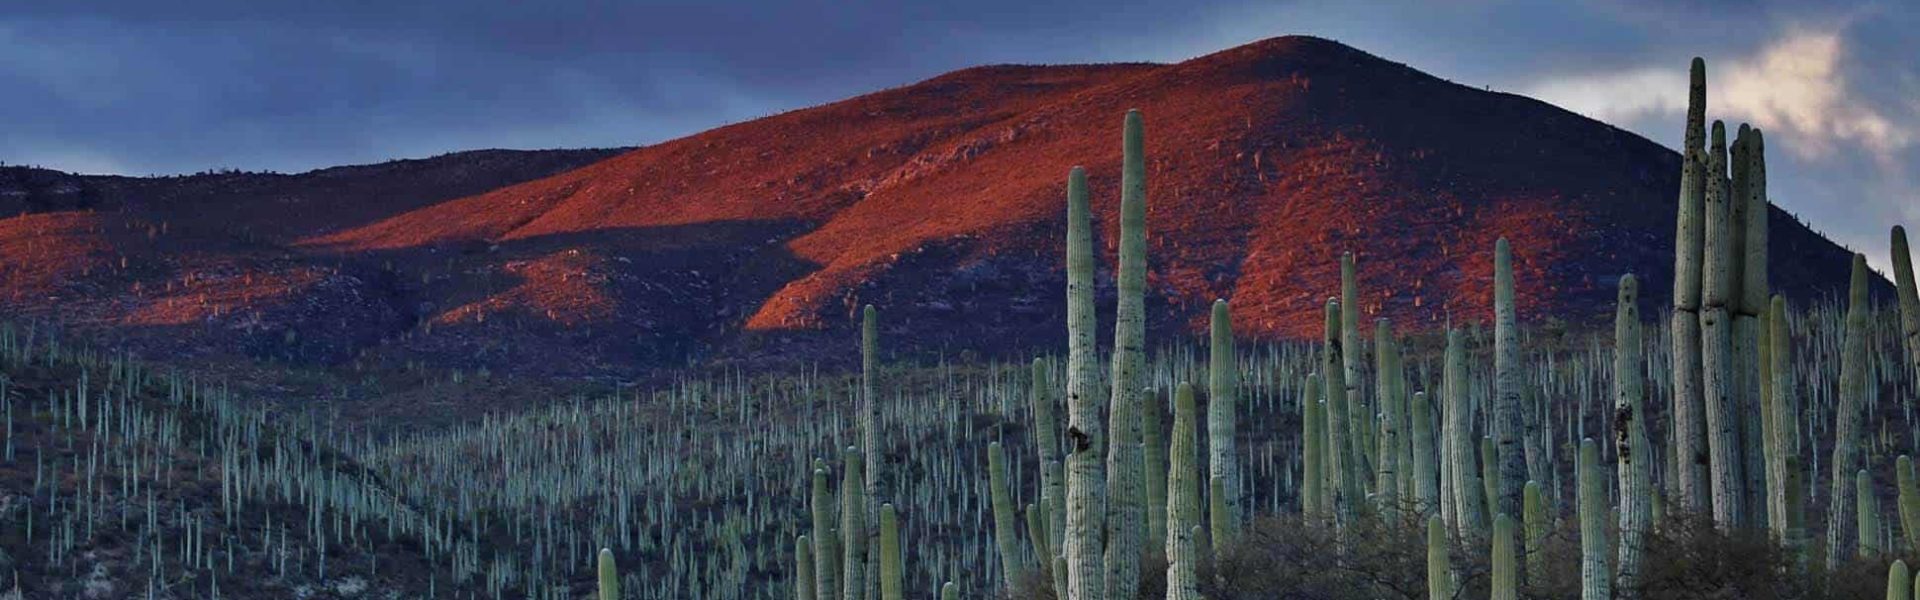 Cactus en México con colina rojiza al fondo